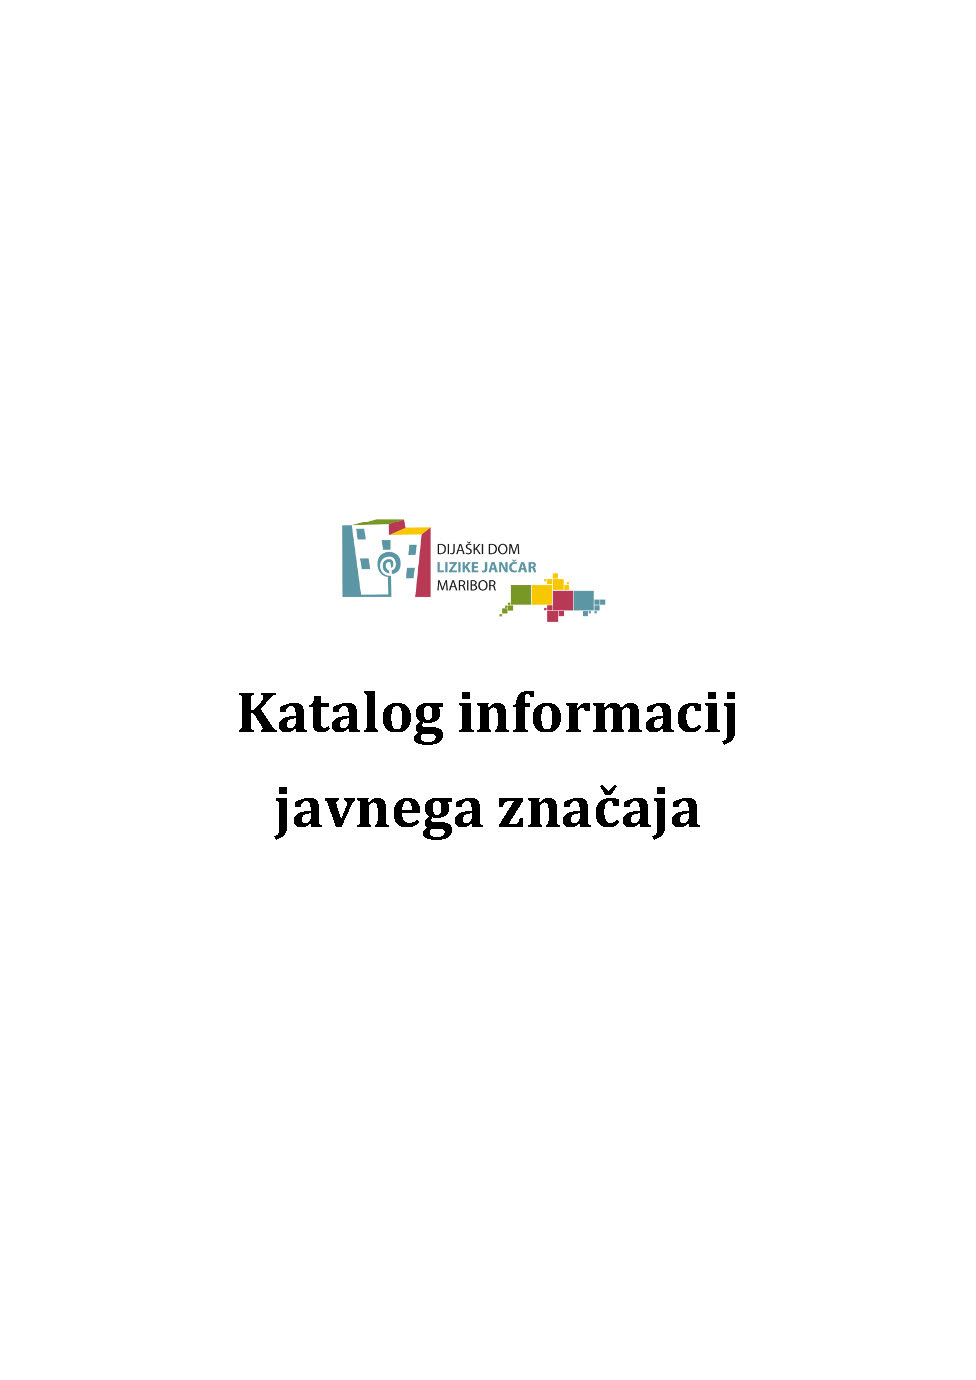 Katalog informacij javnega značaja